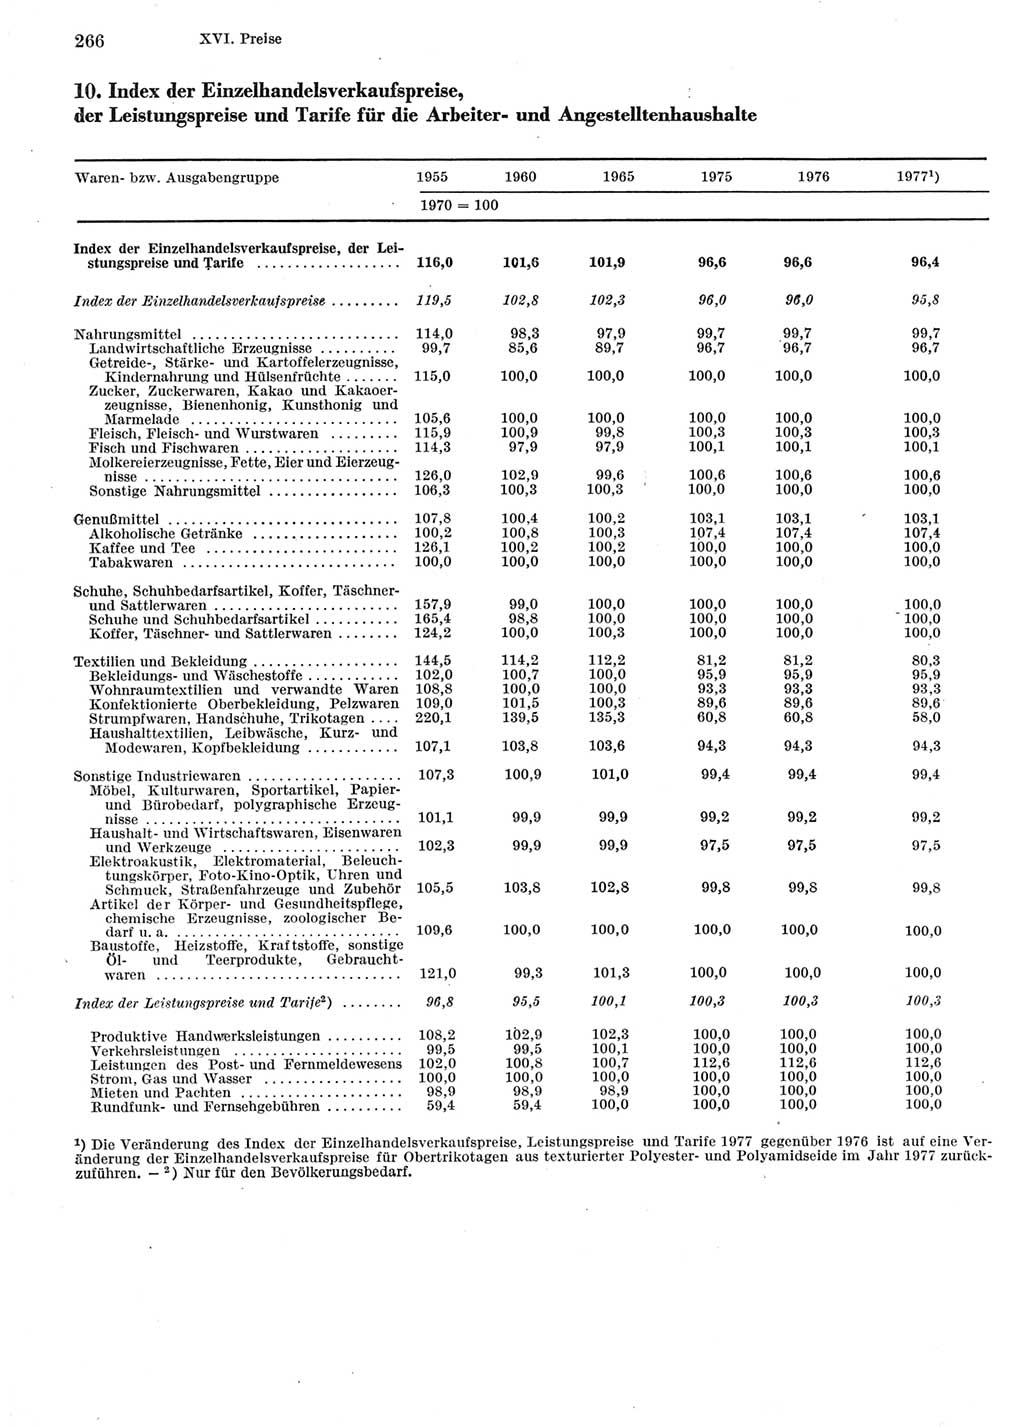 Statistisches Jahrbuch der Deutschen Demokratischen Republik (DDR) 1978, Seite 266 (Stat. Jb. DDR 1978, S. 266)